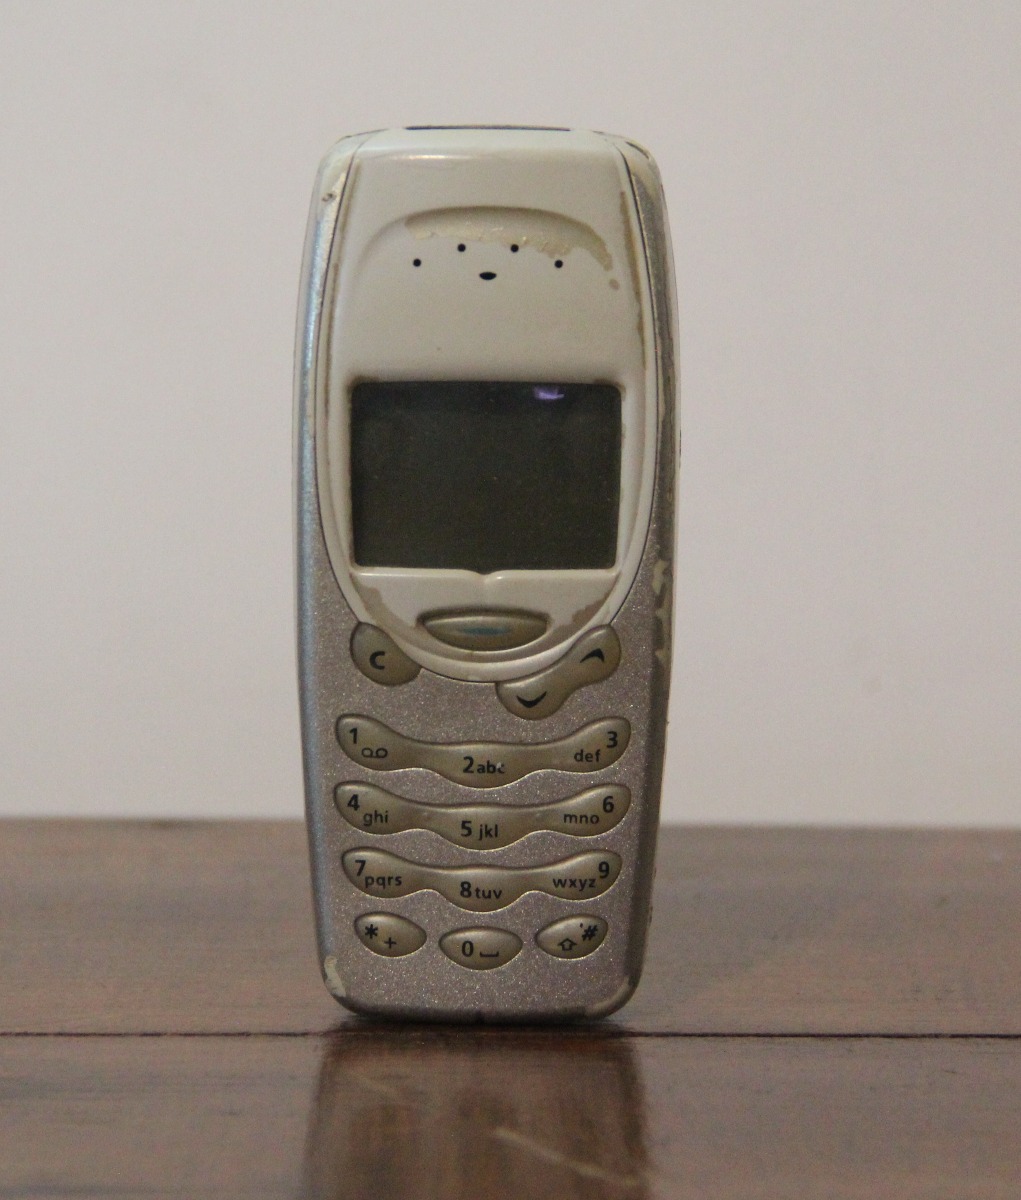 Celular Nokia 3310 Antigo Tijolão Defeito - R$ 39,99 em Mercado Livre